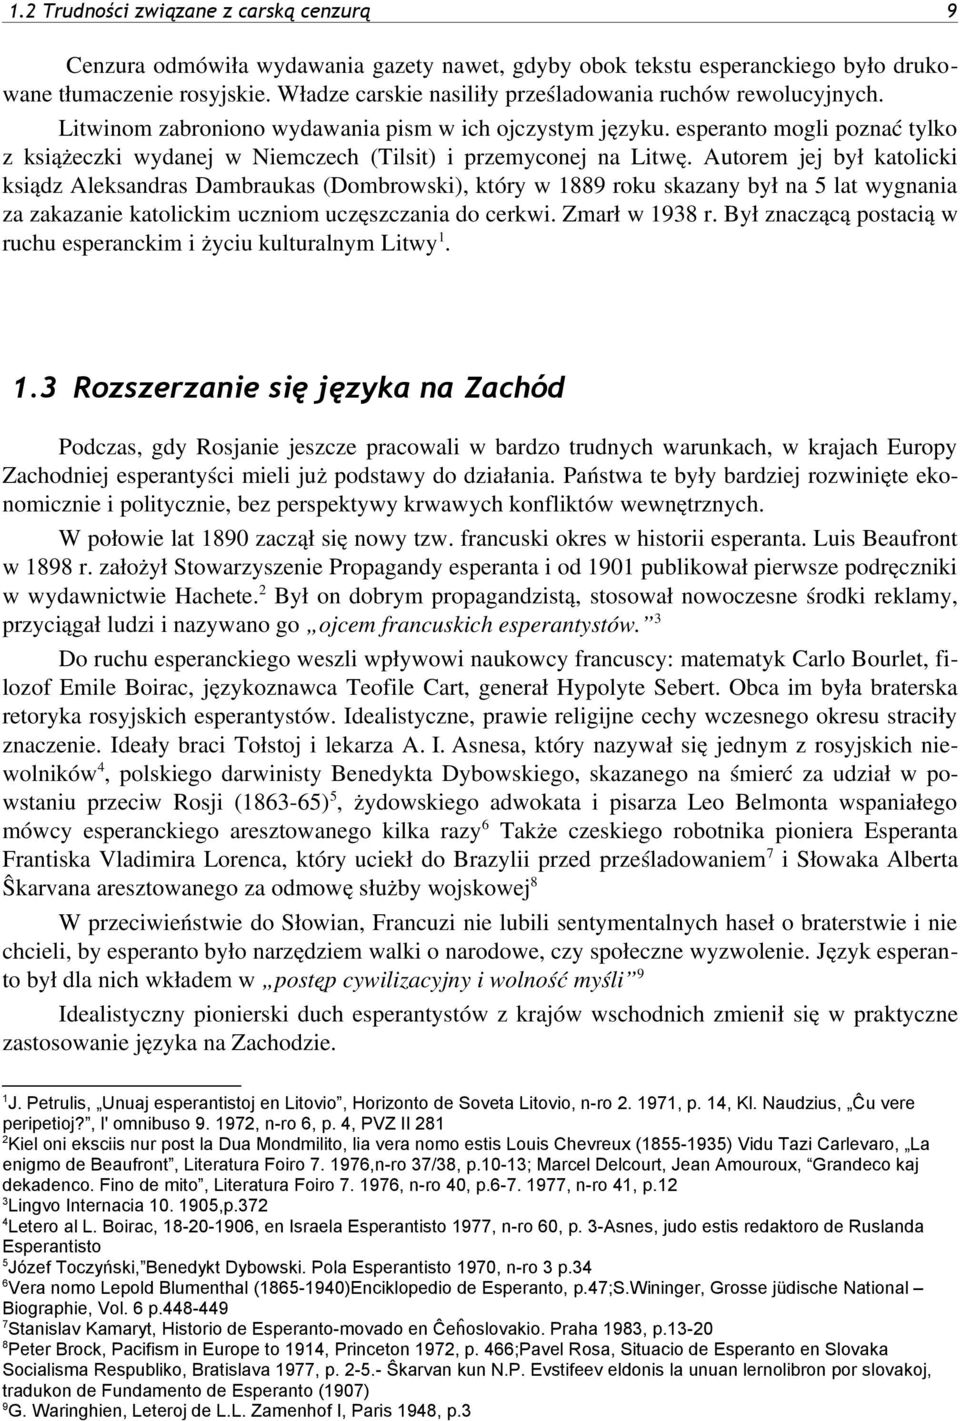 esperanto mogli poznać tylko z książeczki wydanej w Niemczech (Tilsit) i przemyconej na Litwę.